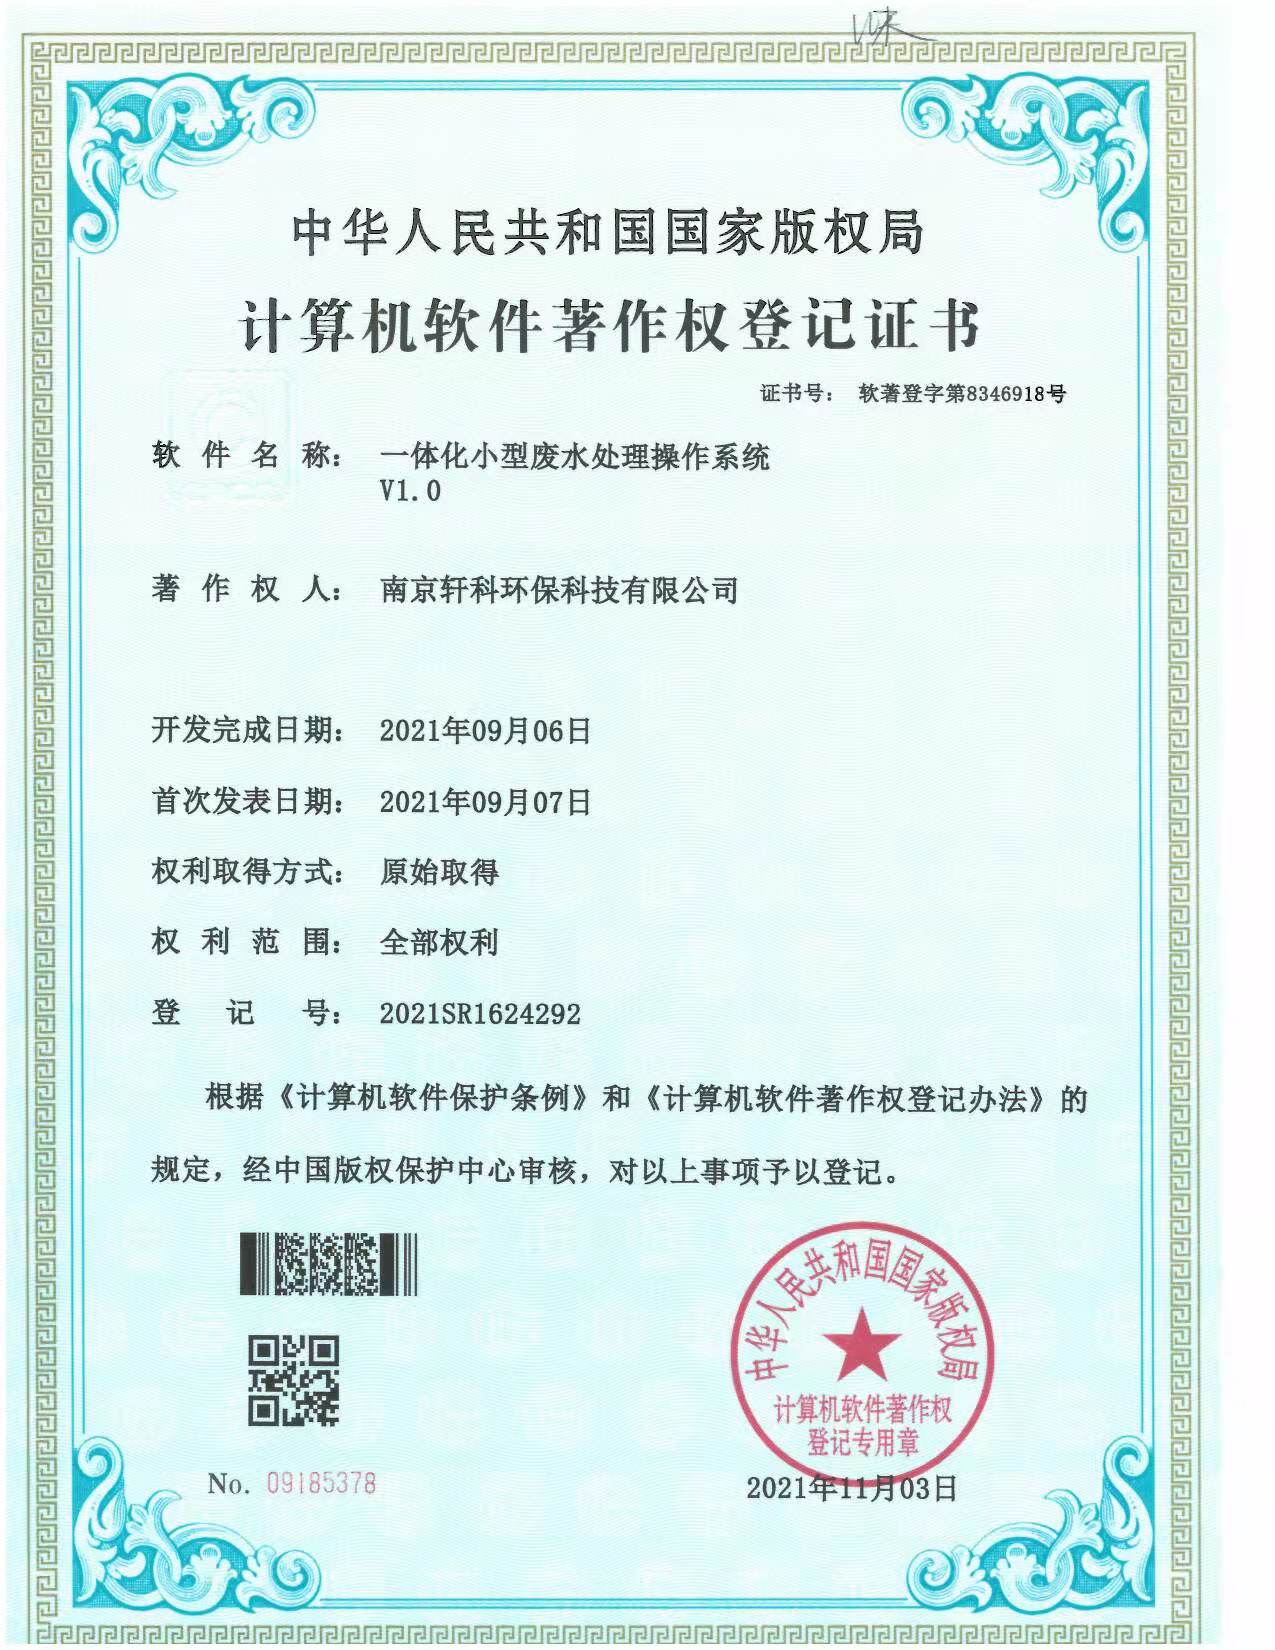 重庆小型一体化废水处理系统软件著作权证书